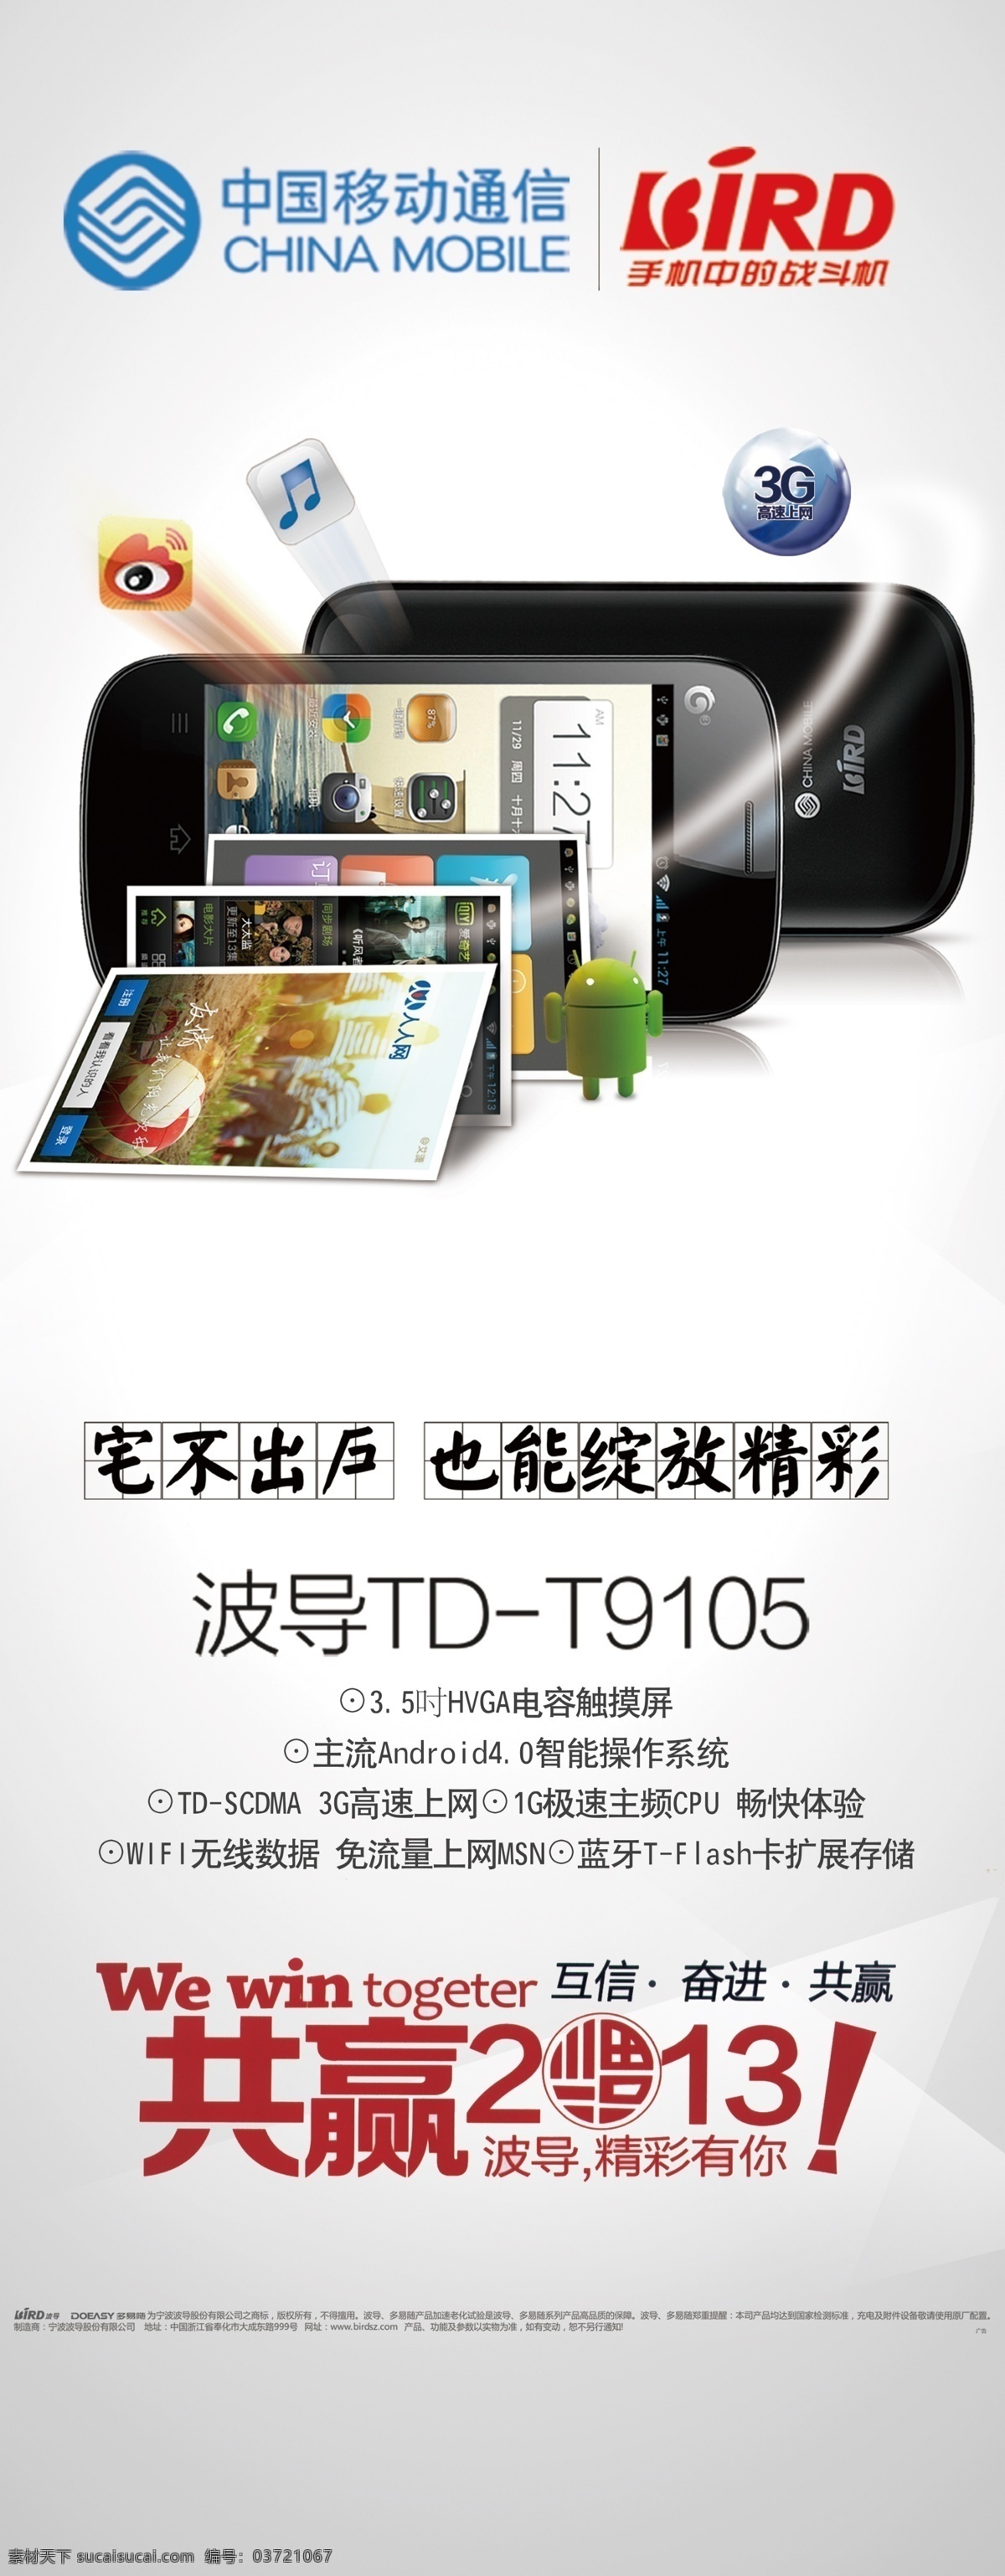 波导手机展板 波导 波导td t9150 手机 共赢2013 灯片 海报 展板 展架 超薄手机 展板模板 广告设计模板 源文件